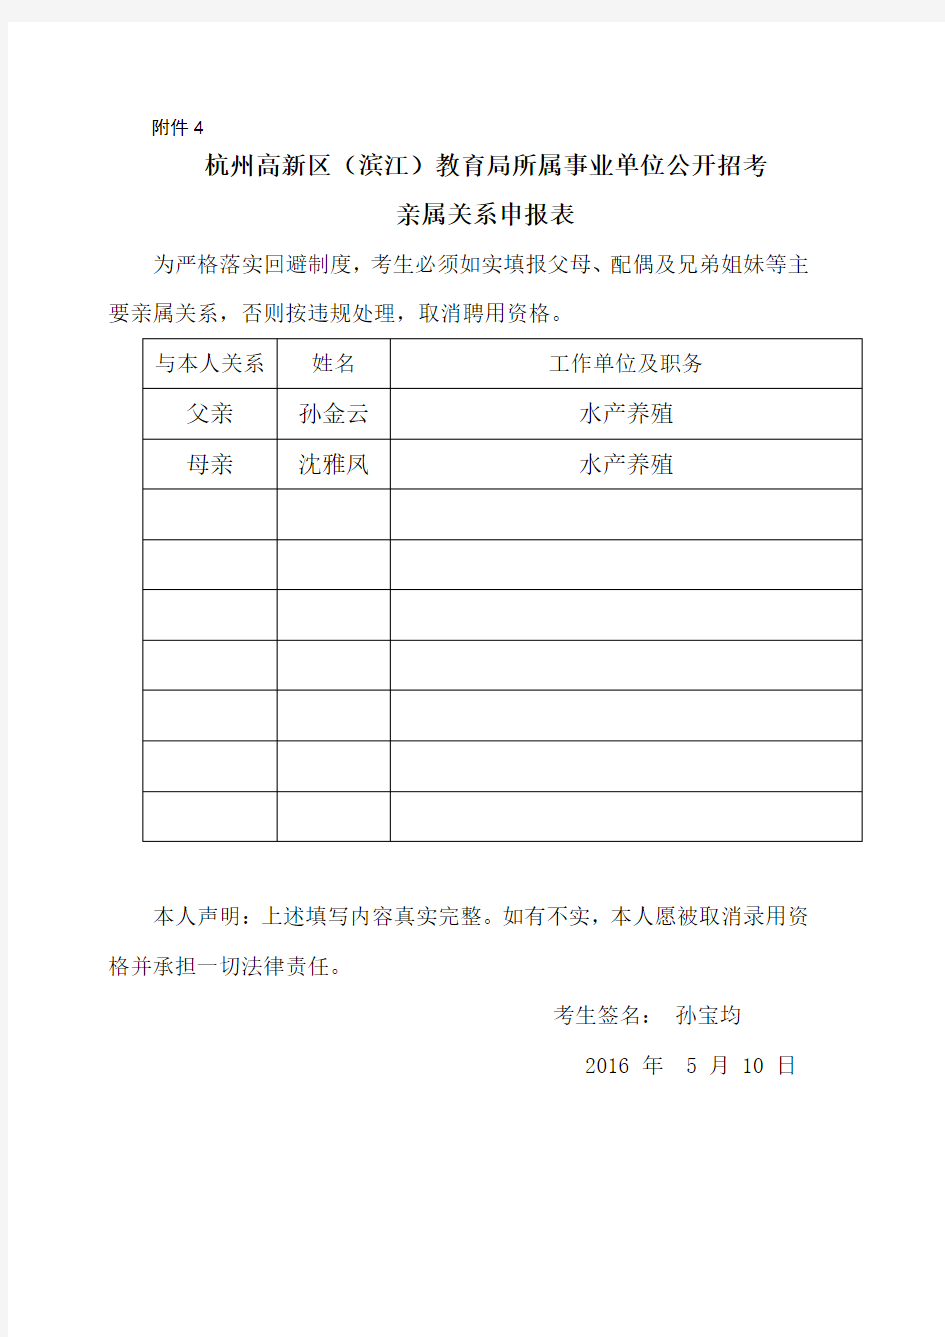 《杭州高新区(滨江)教育局所属事业单位公开招考亲属关系申报表》